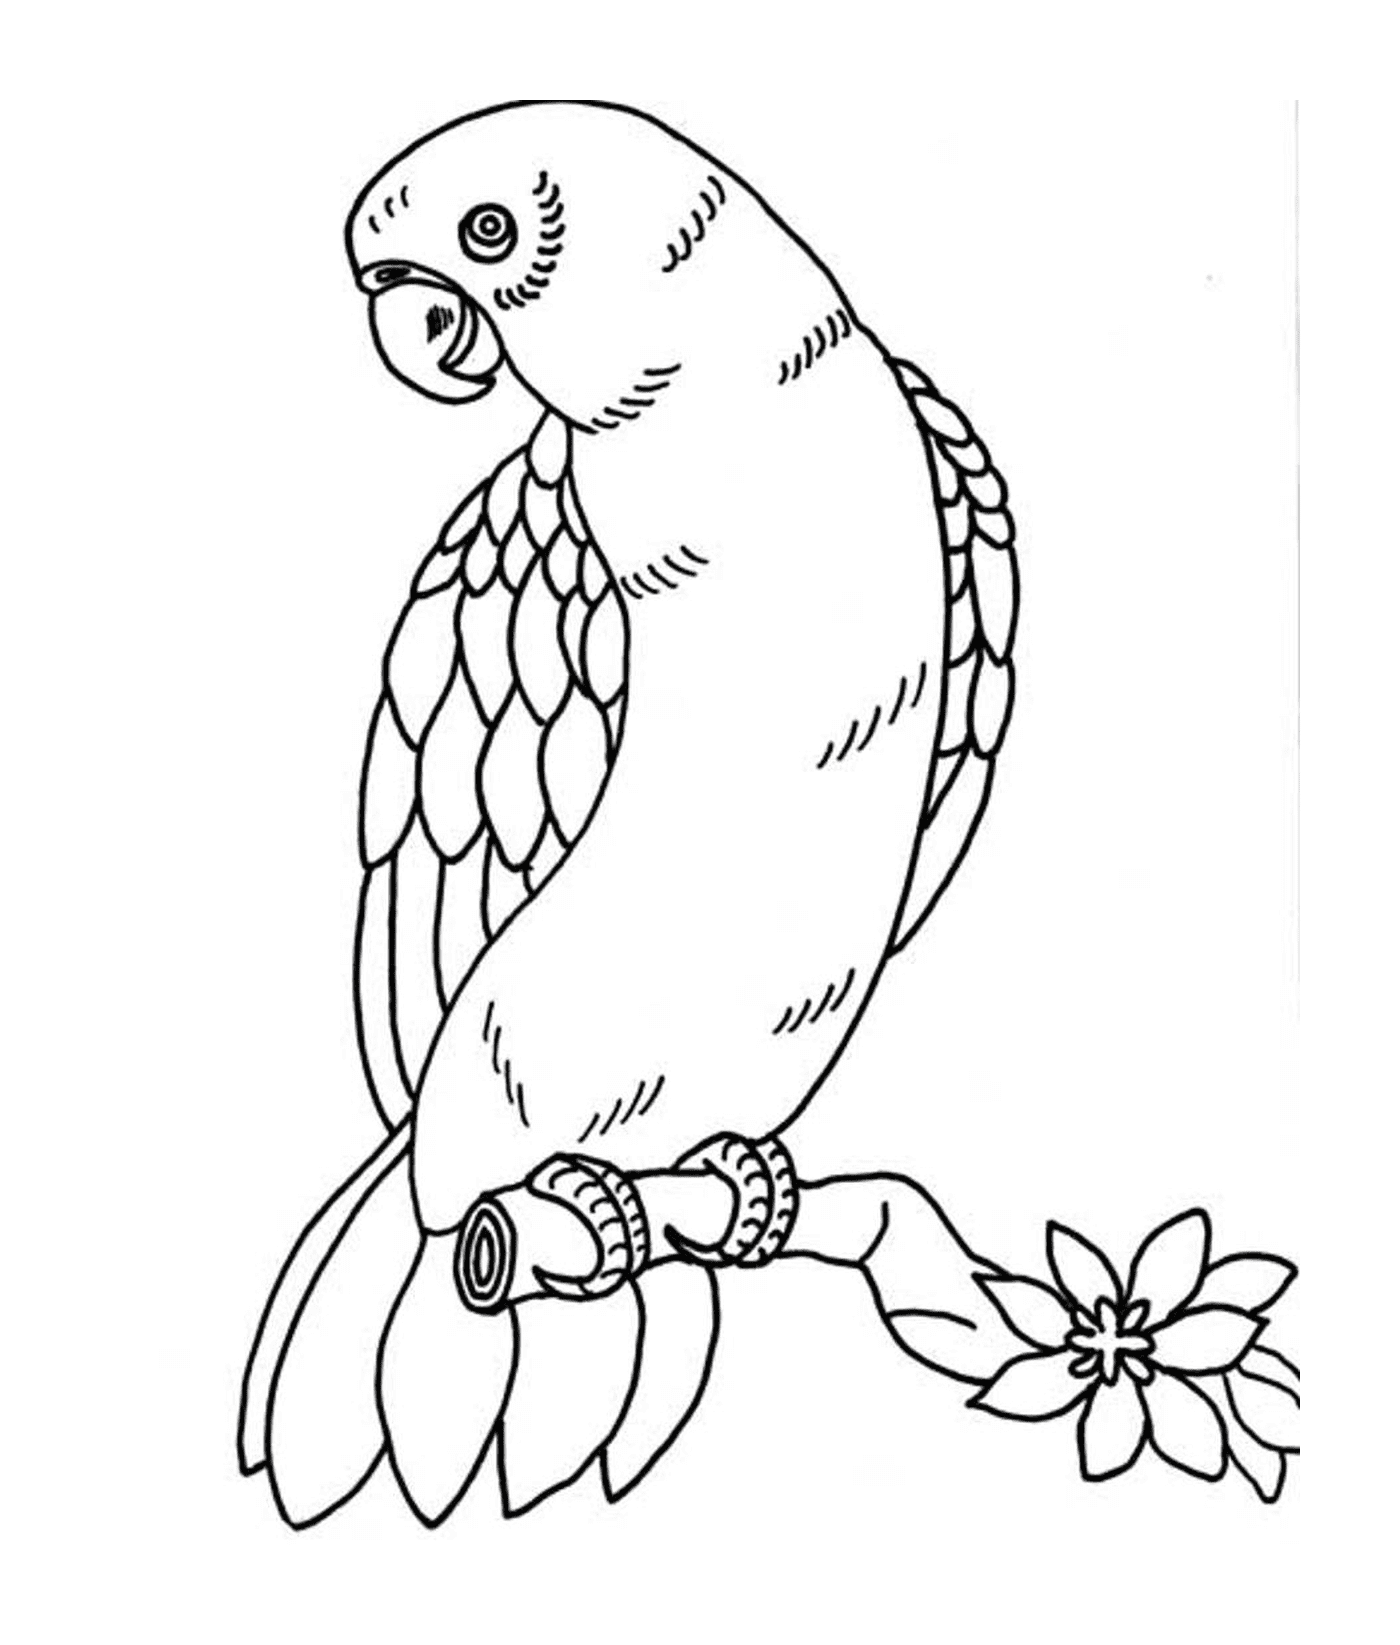  Un pappagallo con piume di diversi colori 